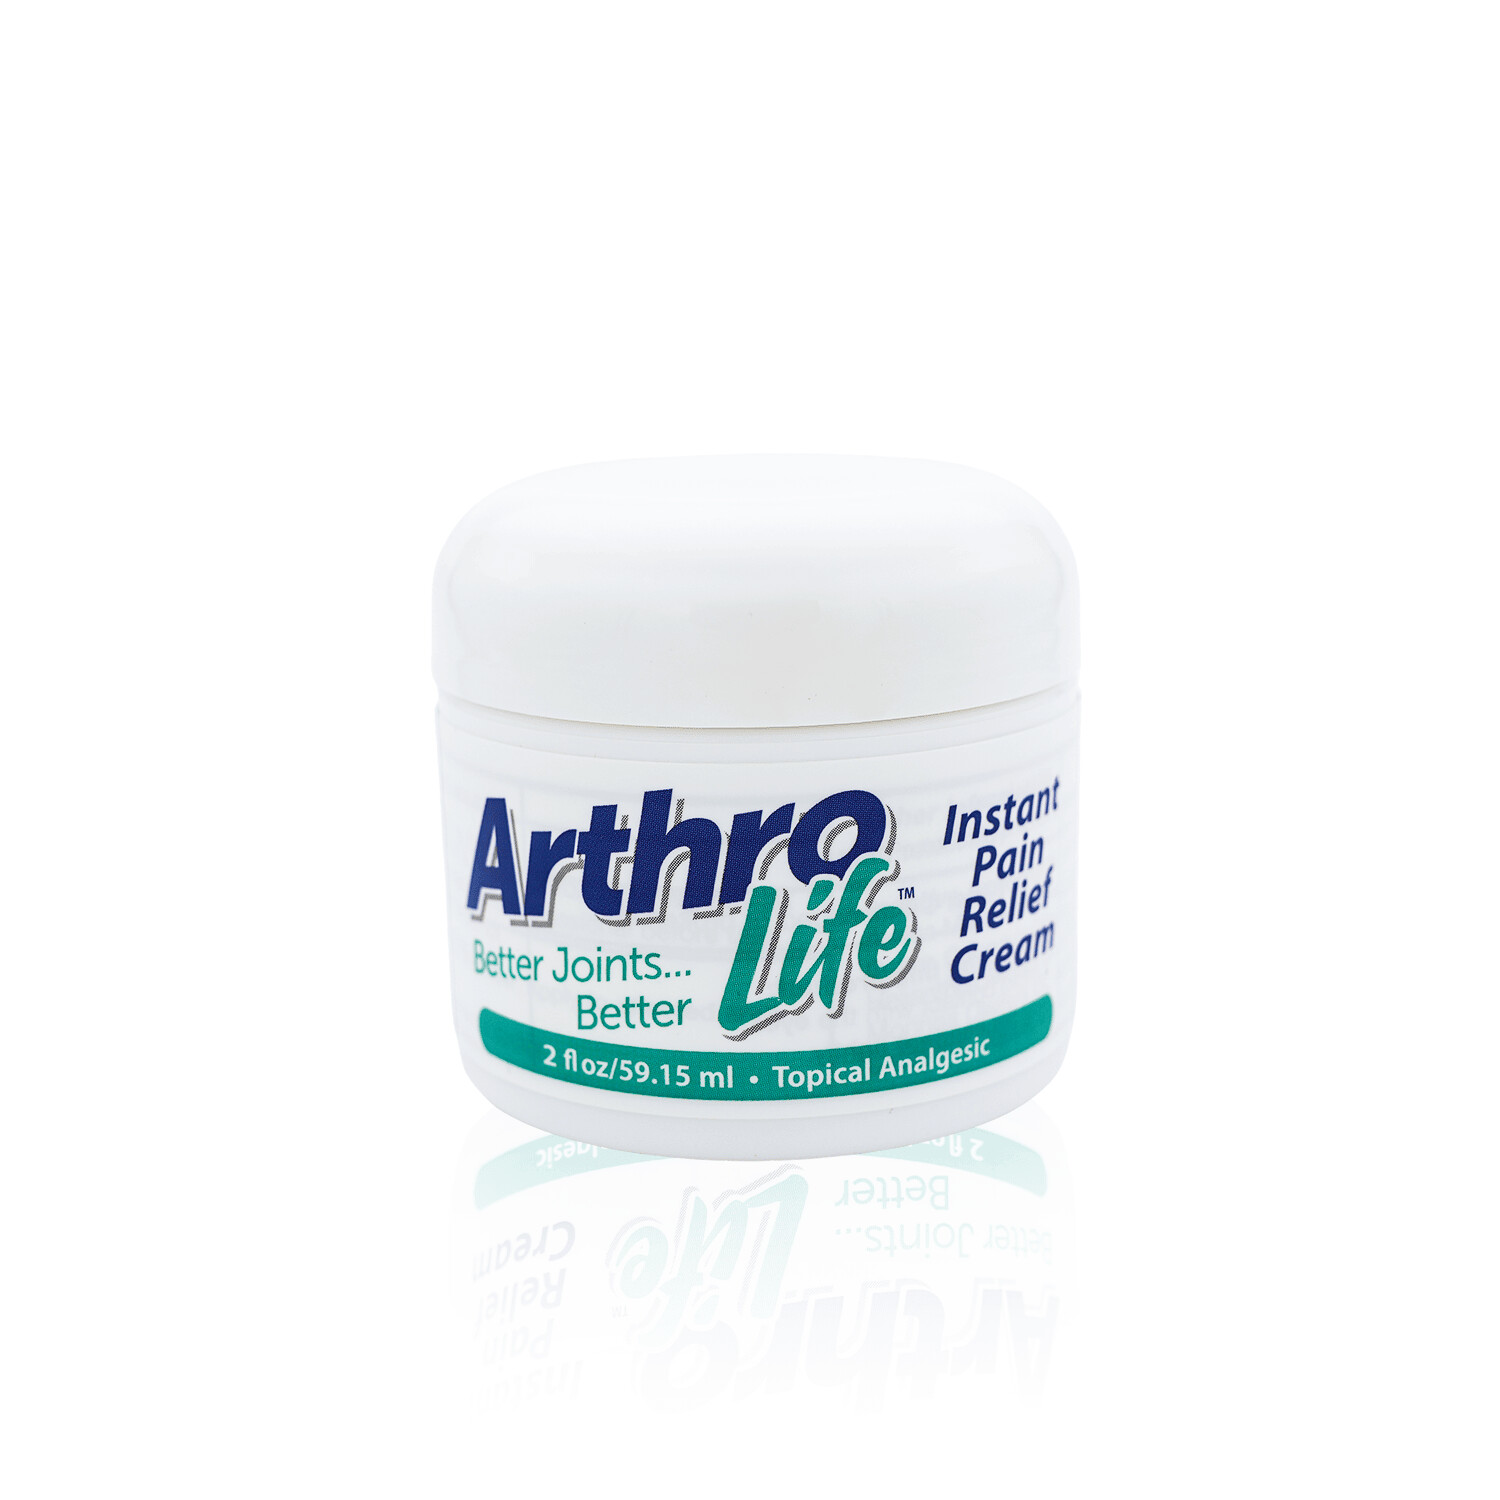 ArthroLife Instant Pain Relief Cream